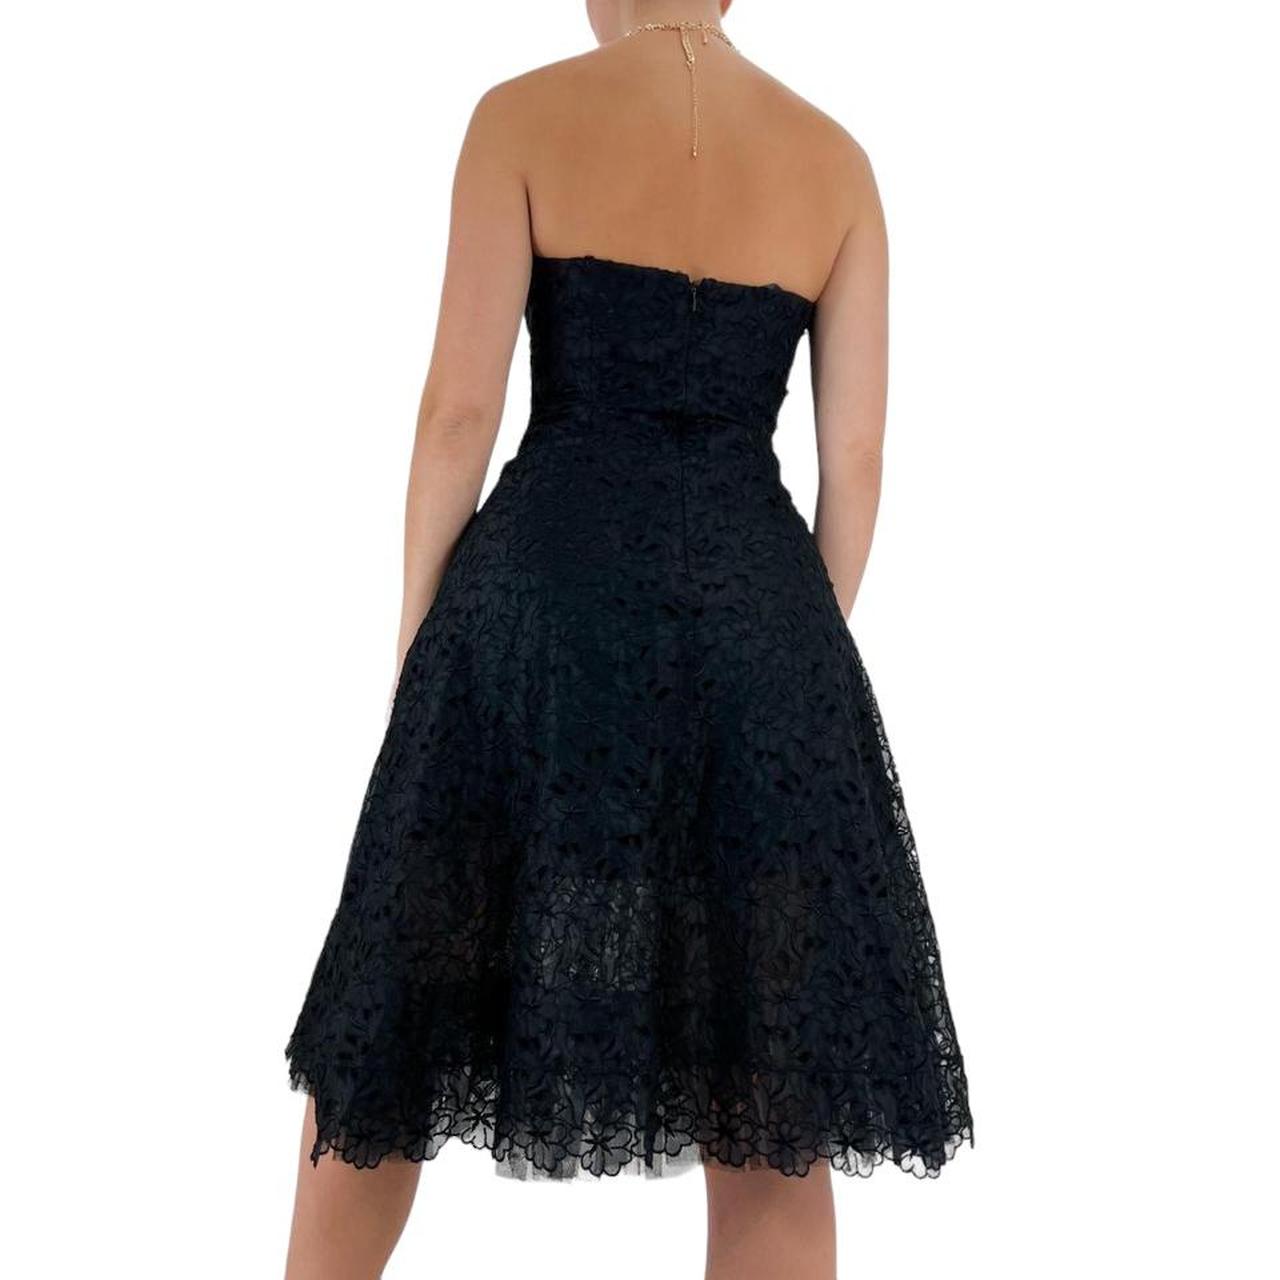 Nicole Miller Designer Vintage Black Floral Lace Strapless Fit + Flare Dress [S]